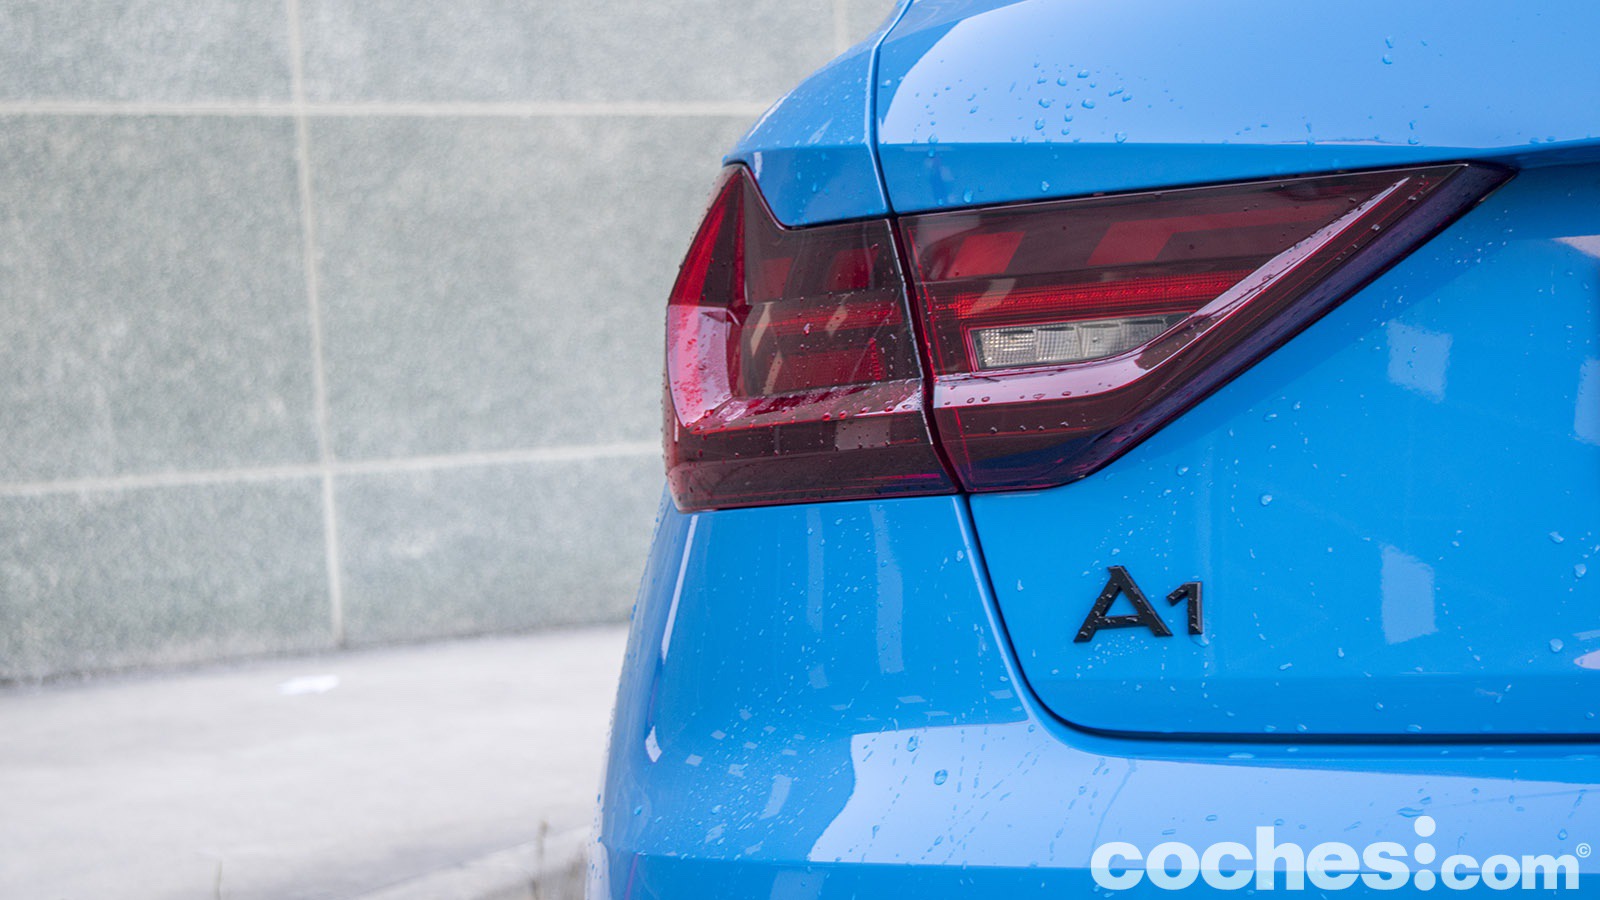 Confirmado: no habrá nueva generación del Audi A1